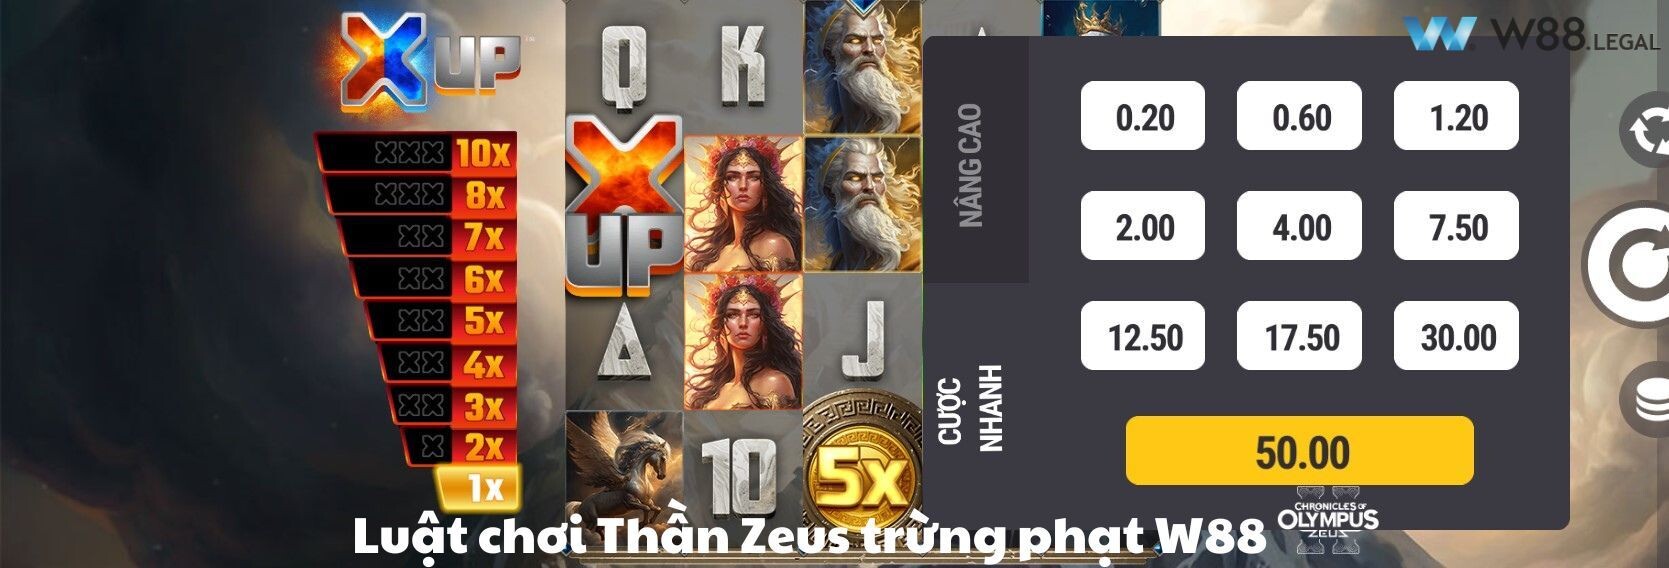 Luật chơi Thần Zeus trừng phạt W88